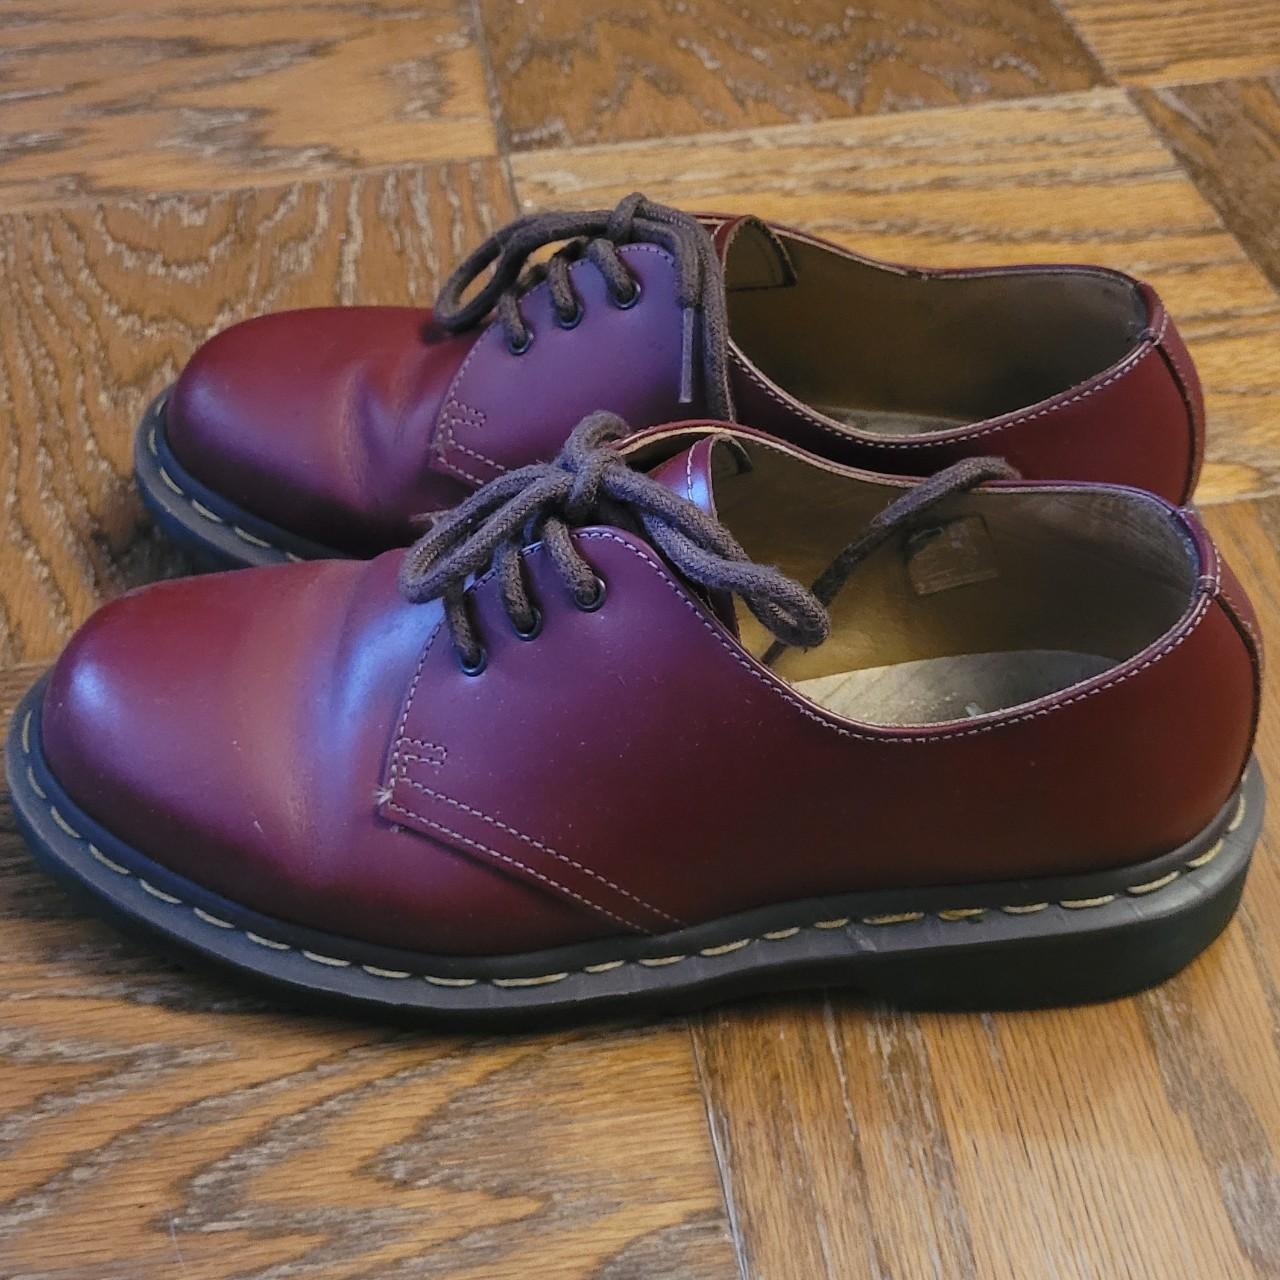 Dr. Martens Men's Red and Burgundy Footwear (4)